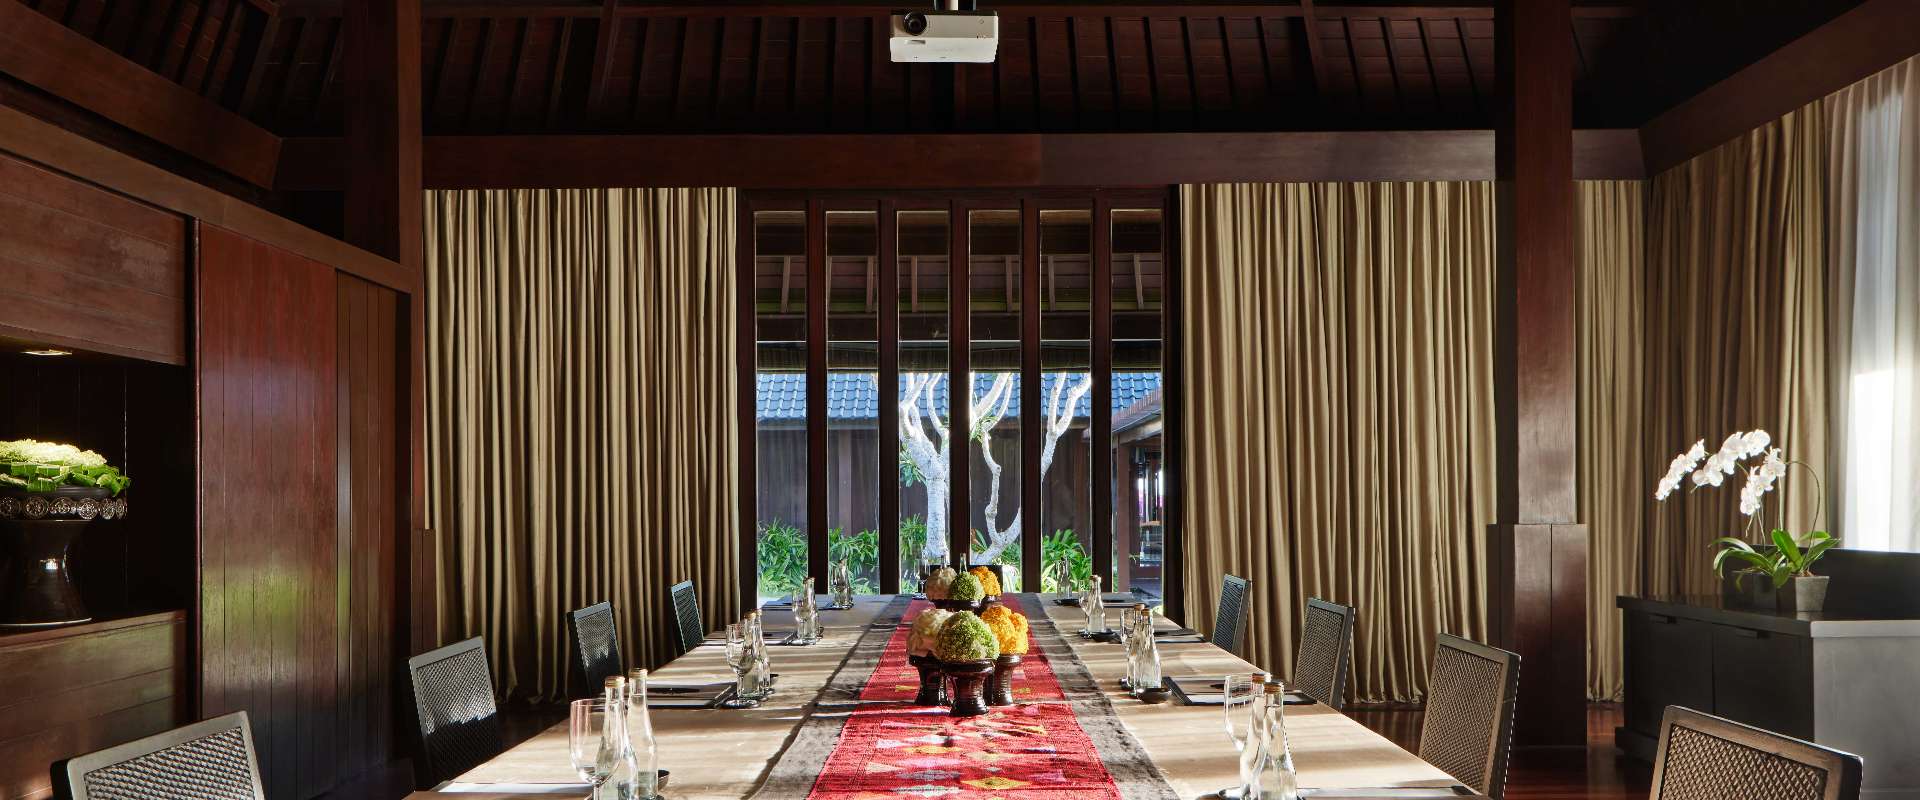 Bulgari Resort Bali - Boardroom